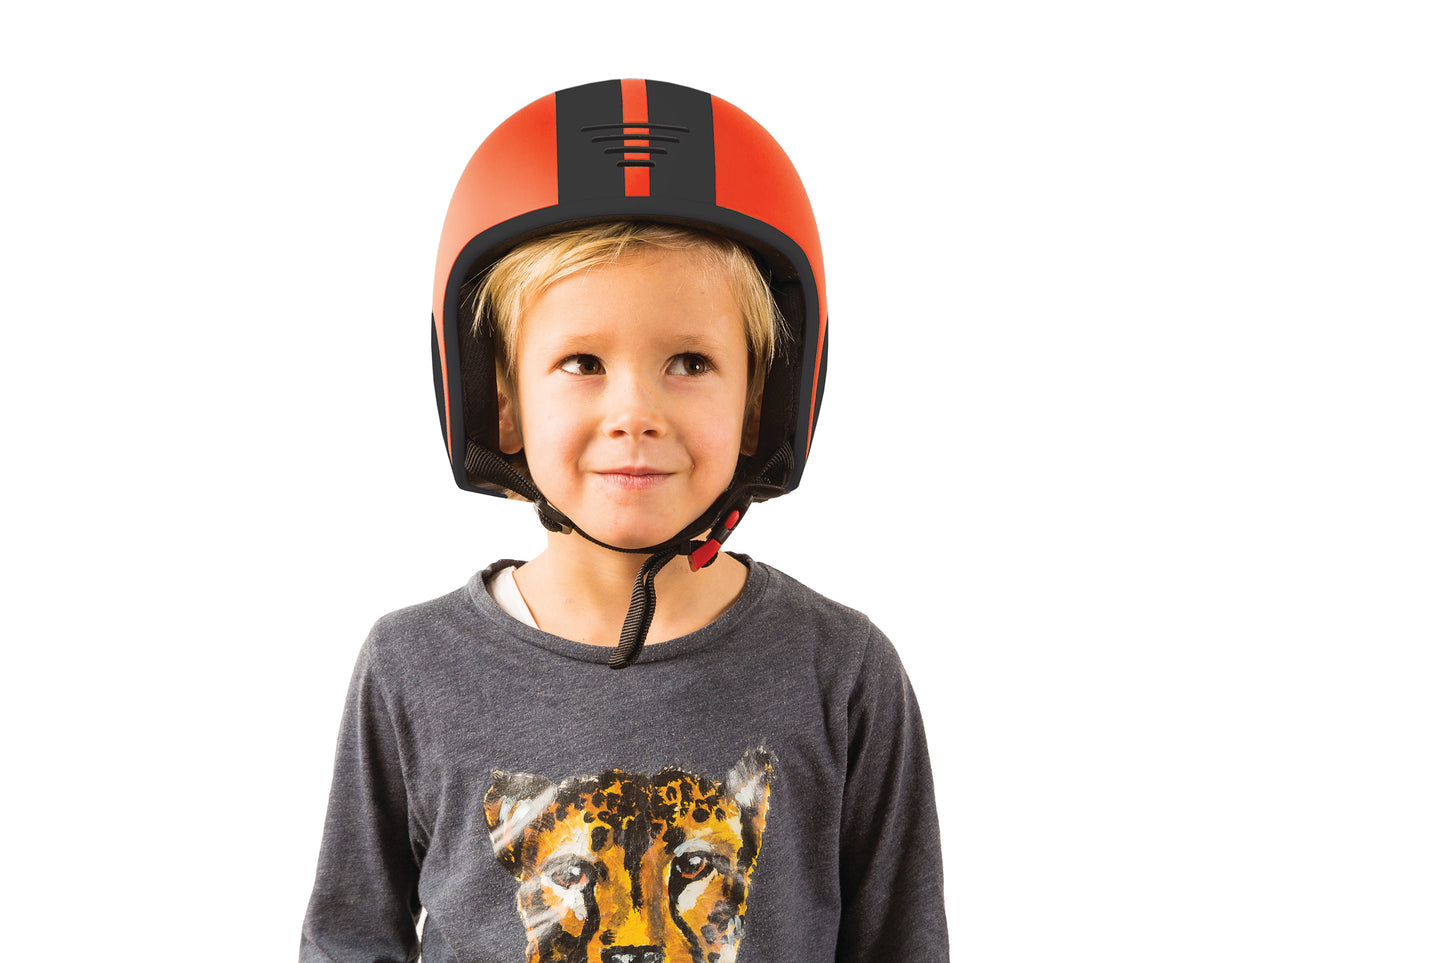 Bobbi -  Helm mit Einsteller - Größe XS und S